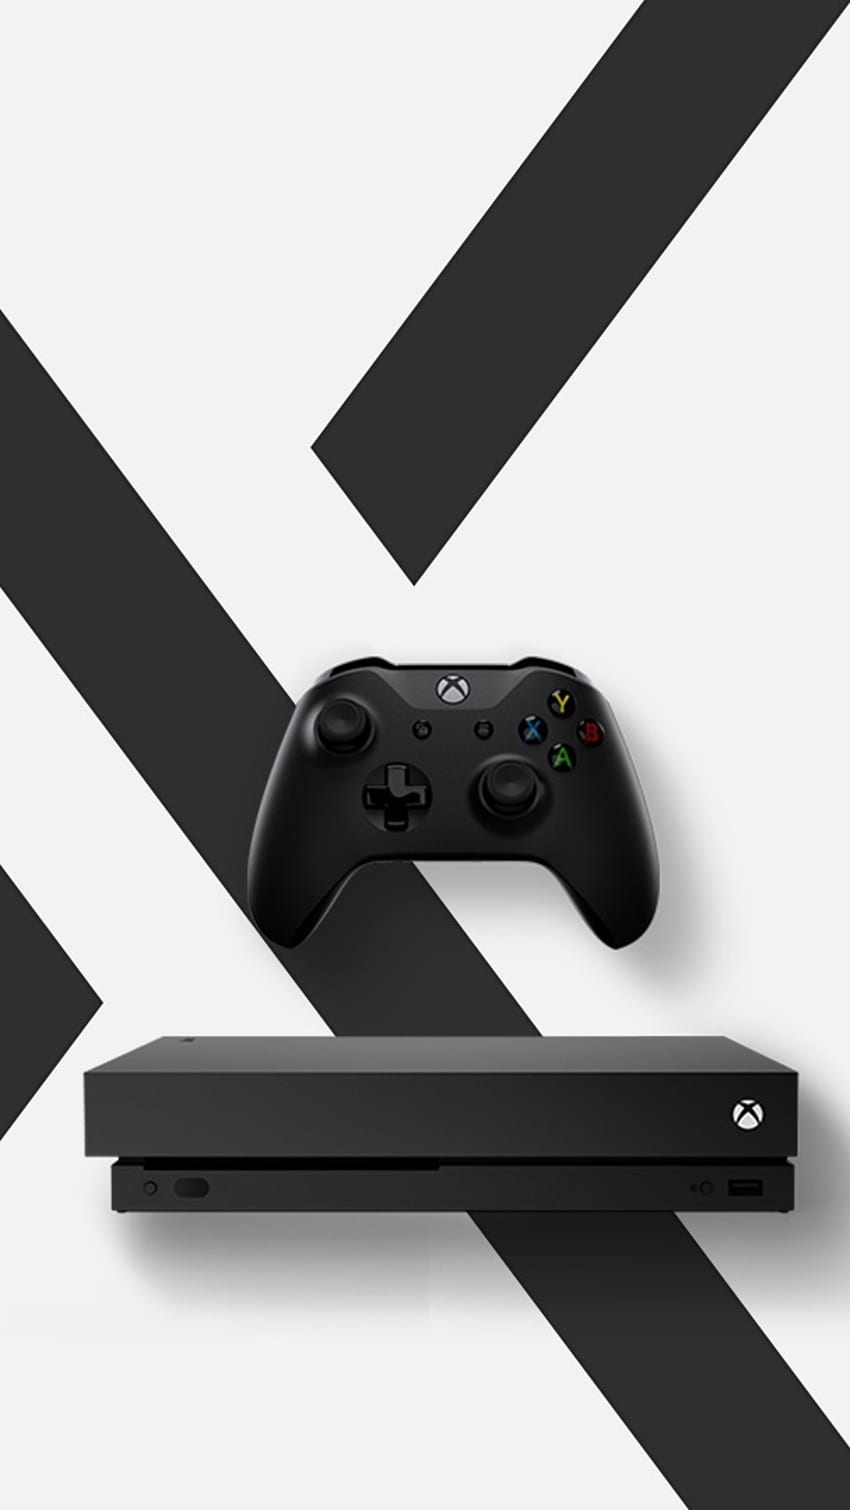 Hình nền Xbox Series S đầy tràn sự mới mẻ, độc đáo và đẹp mắt. Hãy khám phá chúng ngay để tận hưởng không gian màn hình máy tính hoàn hảo và phong cách của Xbox.